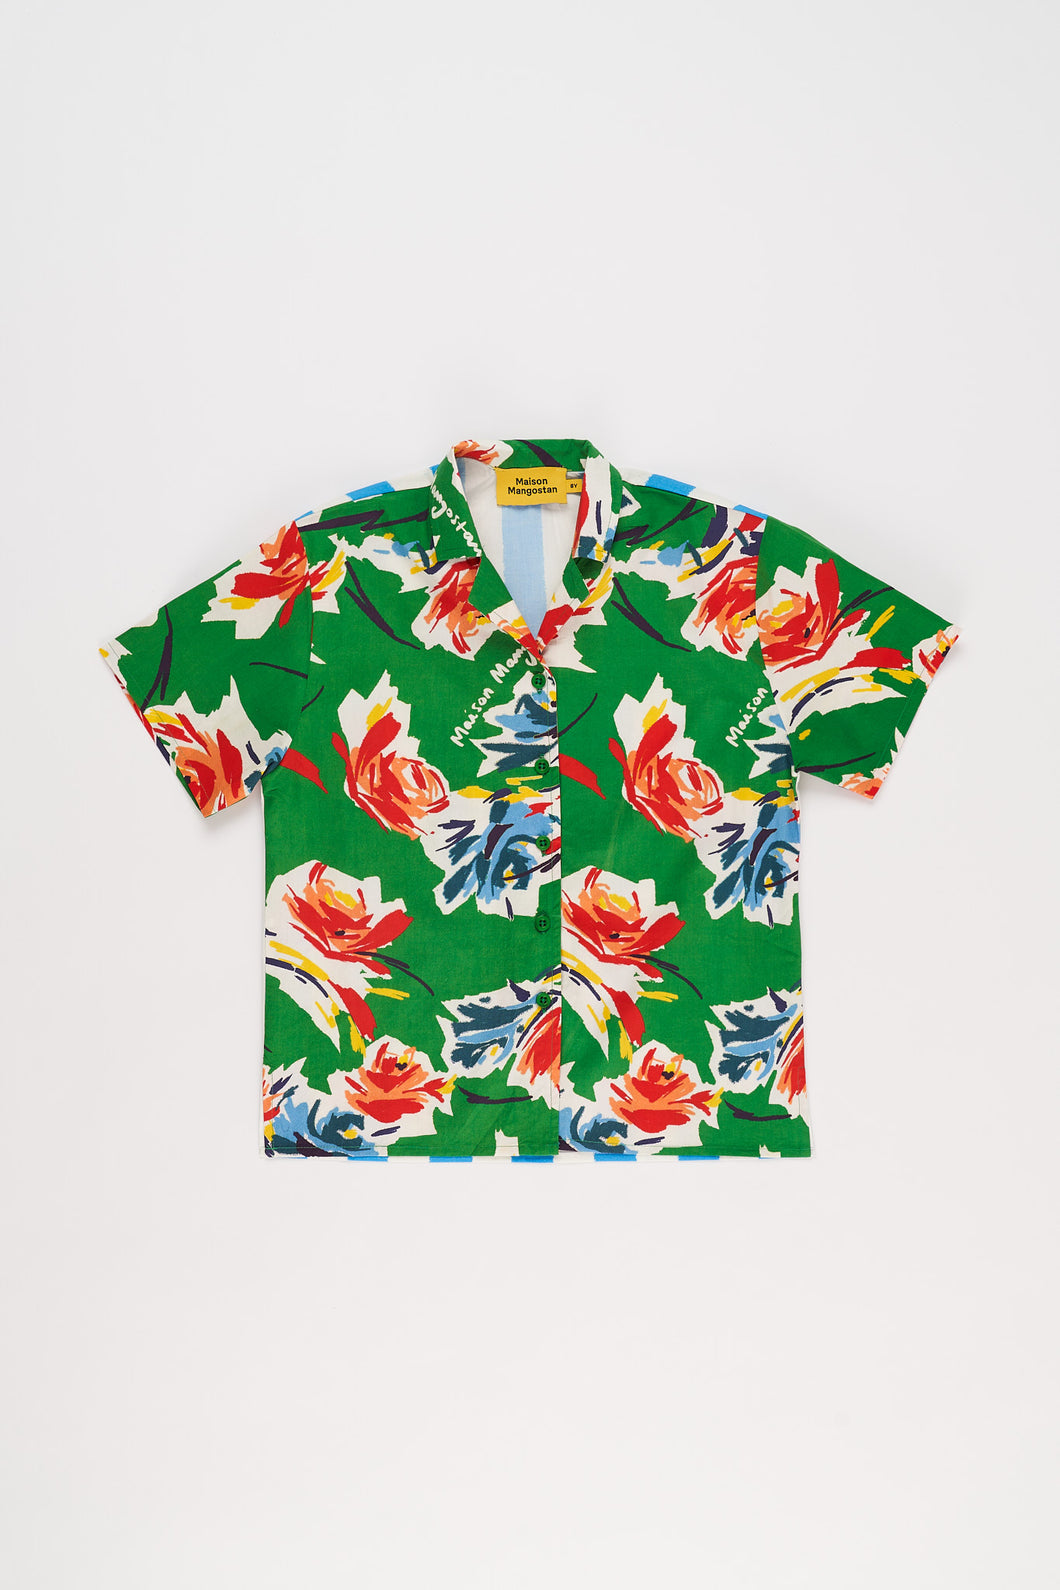 Maison Mangostan / Flowers Shirt / Green